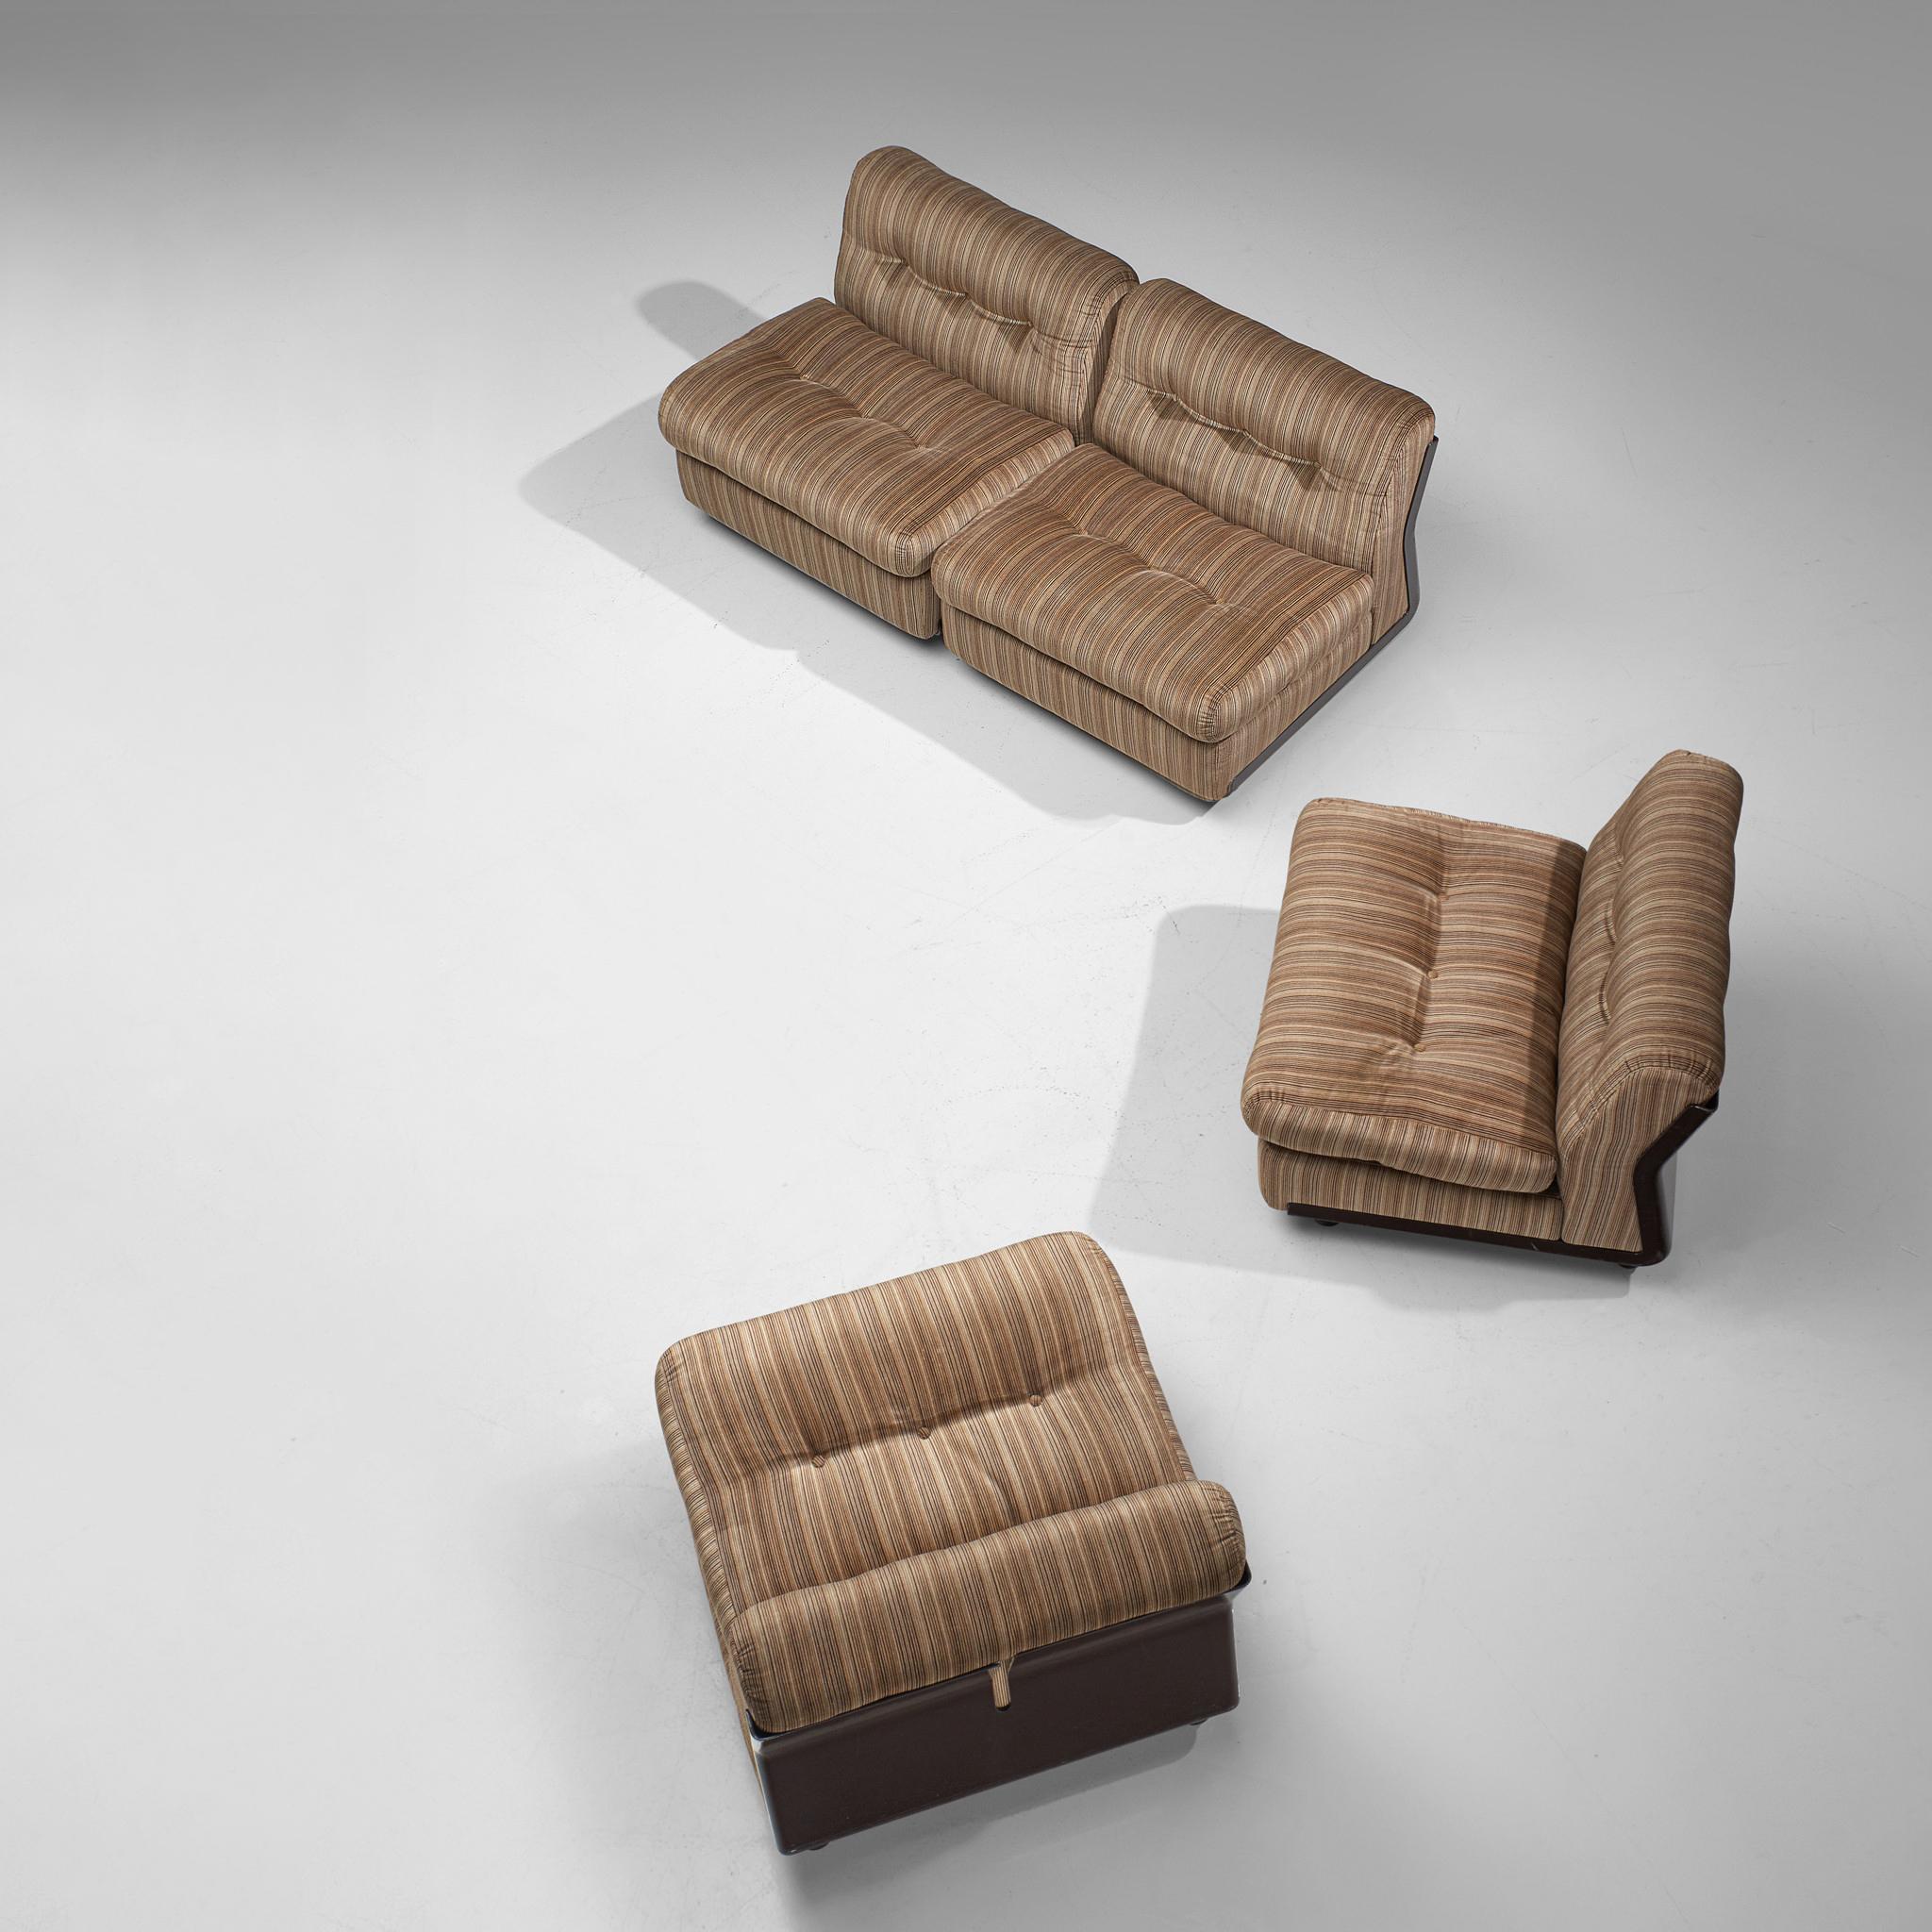 Mario Bellini 'Amanta' Modular Sofa in Original Striped Fabric 2